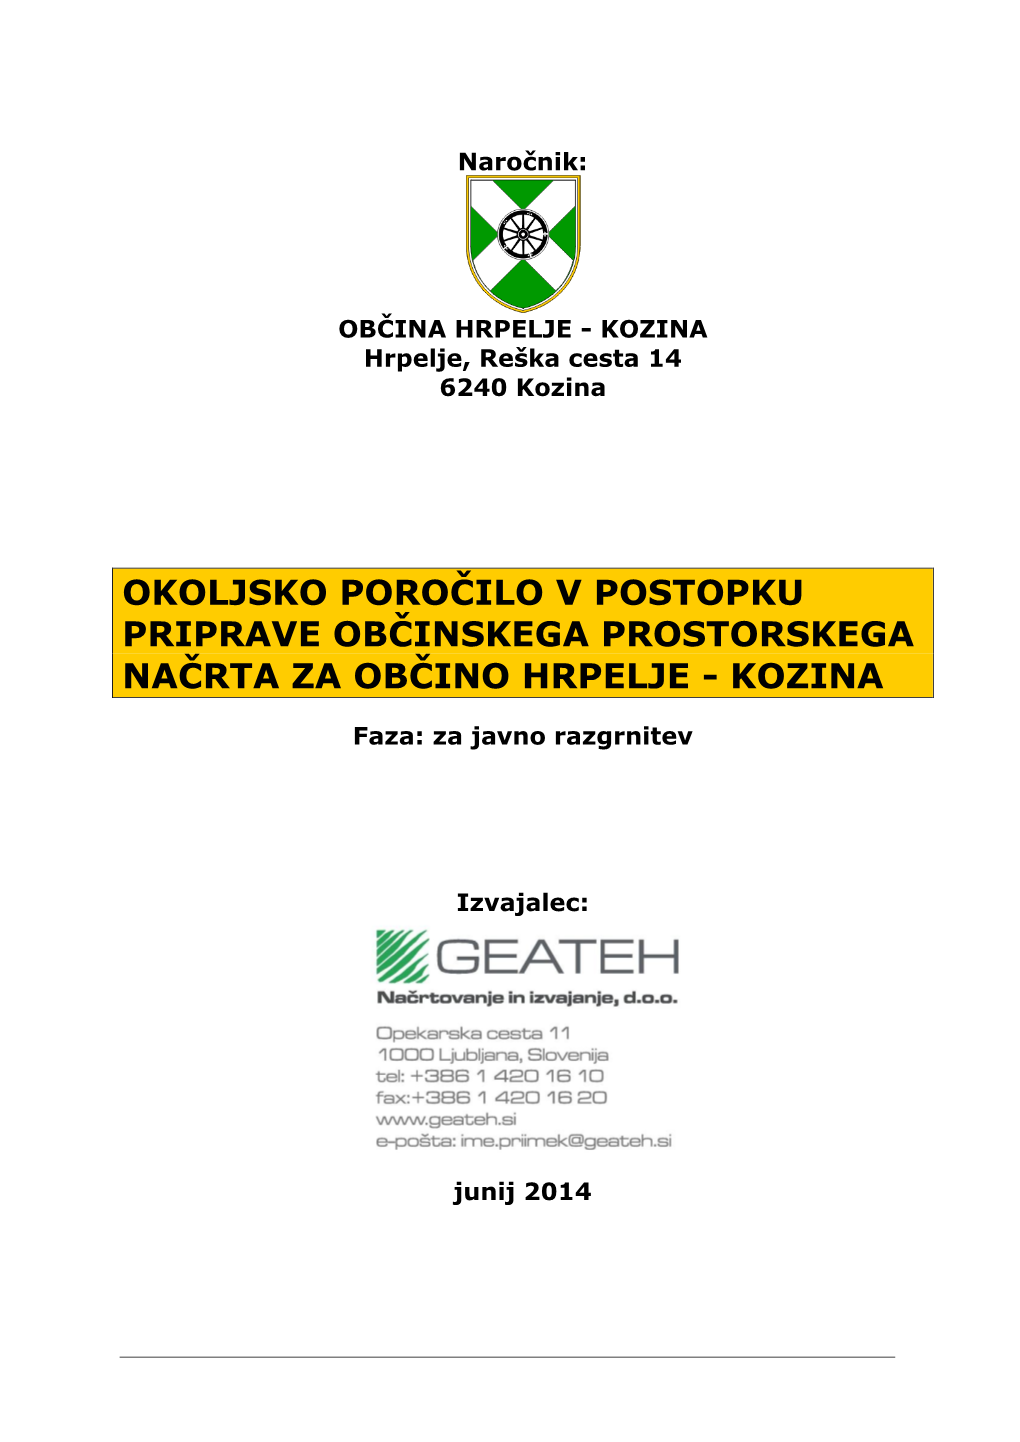 Okoljsko Poročilo V Postopku Priprave Občinskega Prostorskega Načrta Za Občino Hrpelje - Kozina